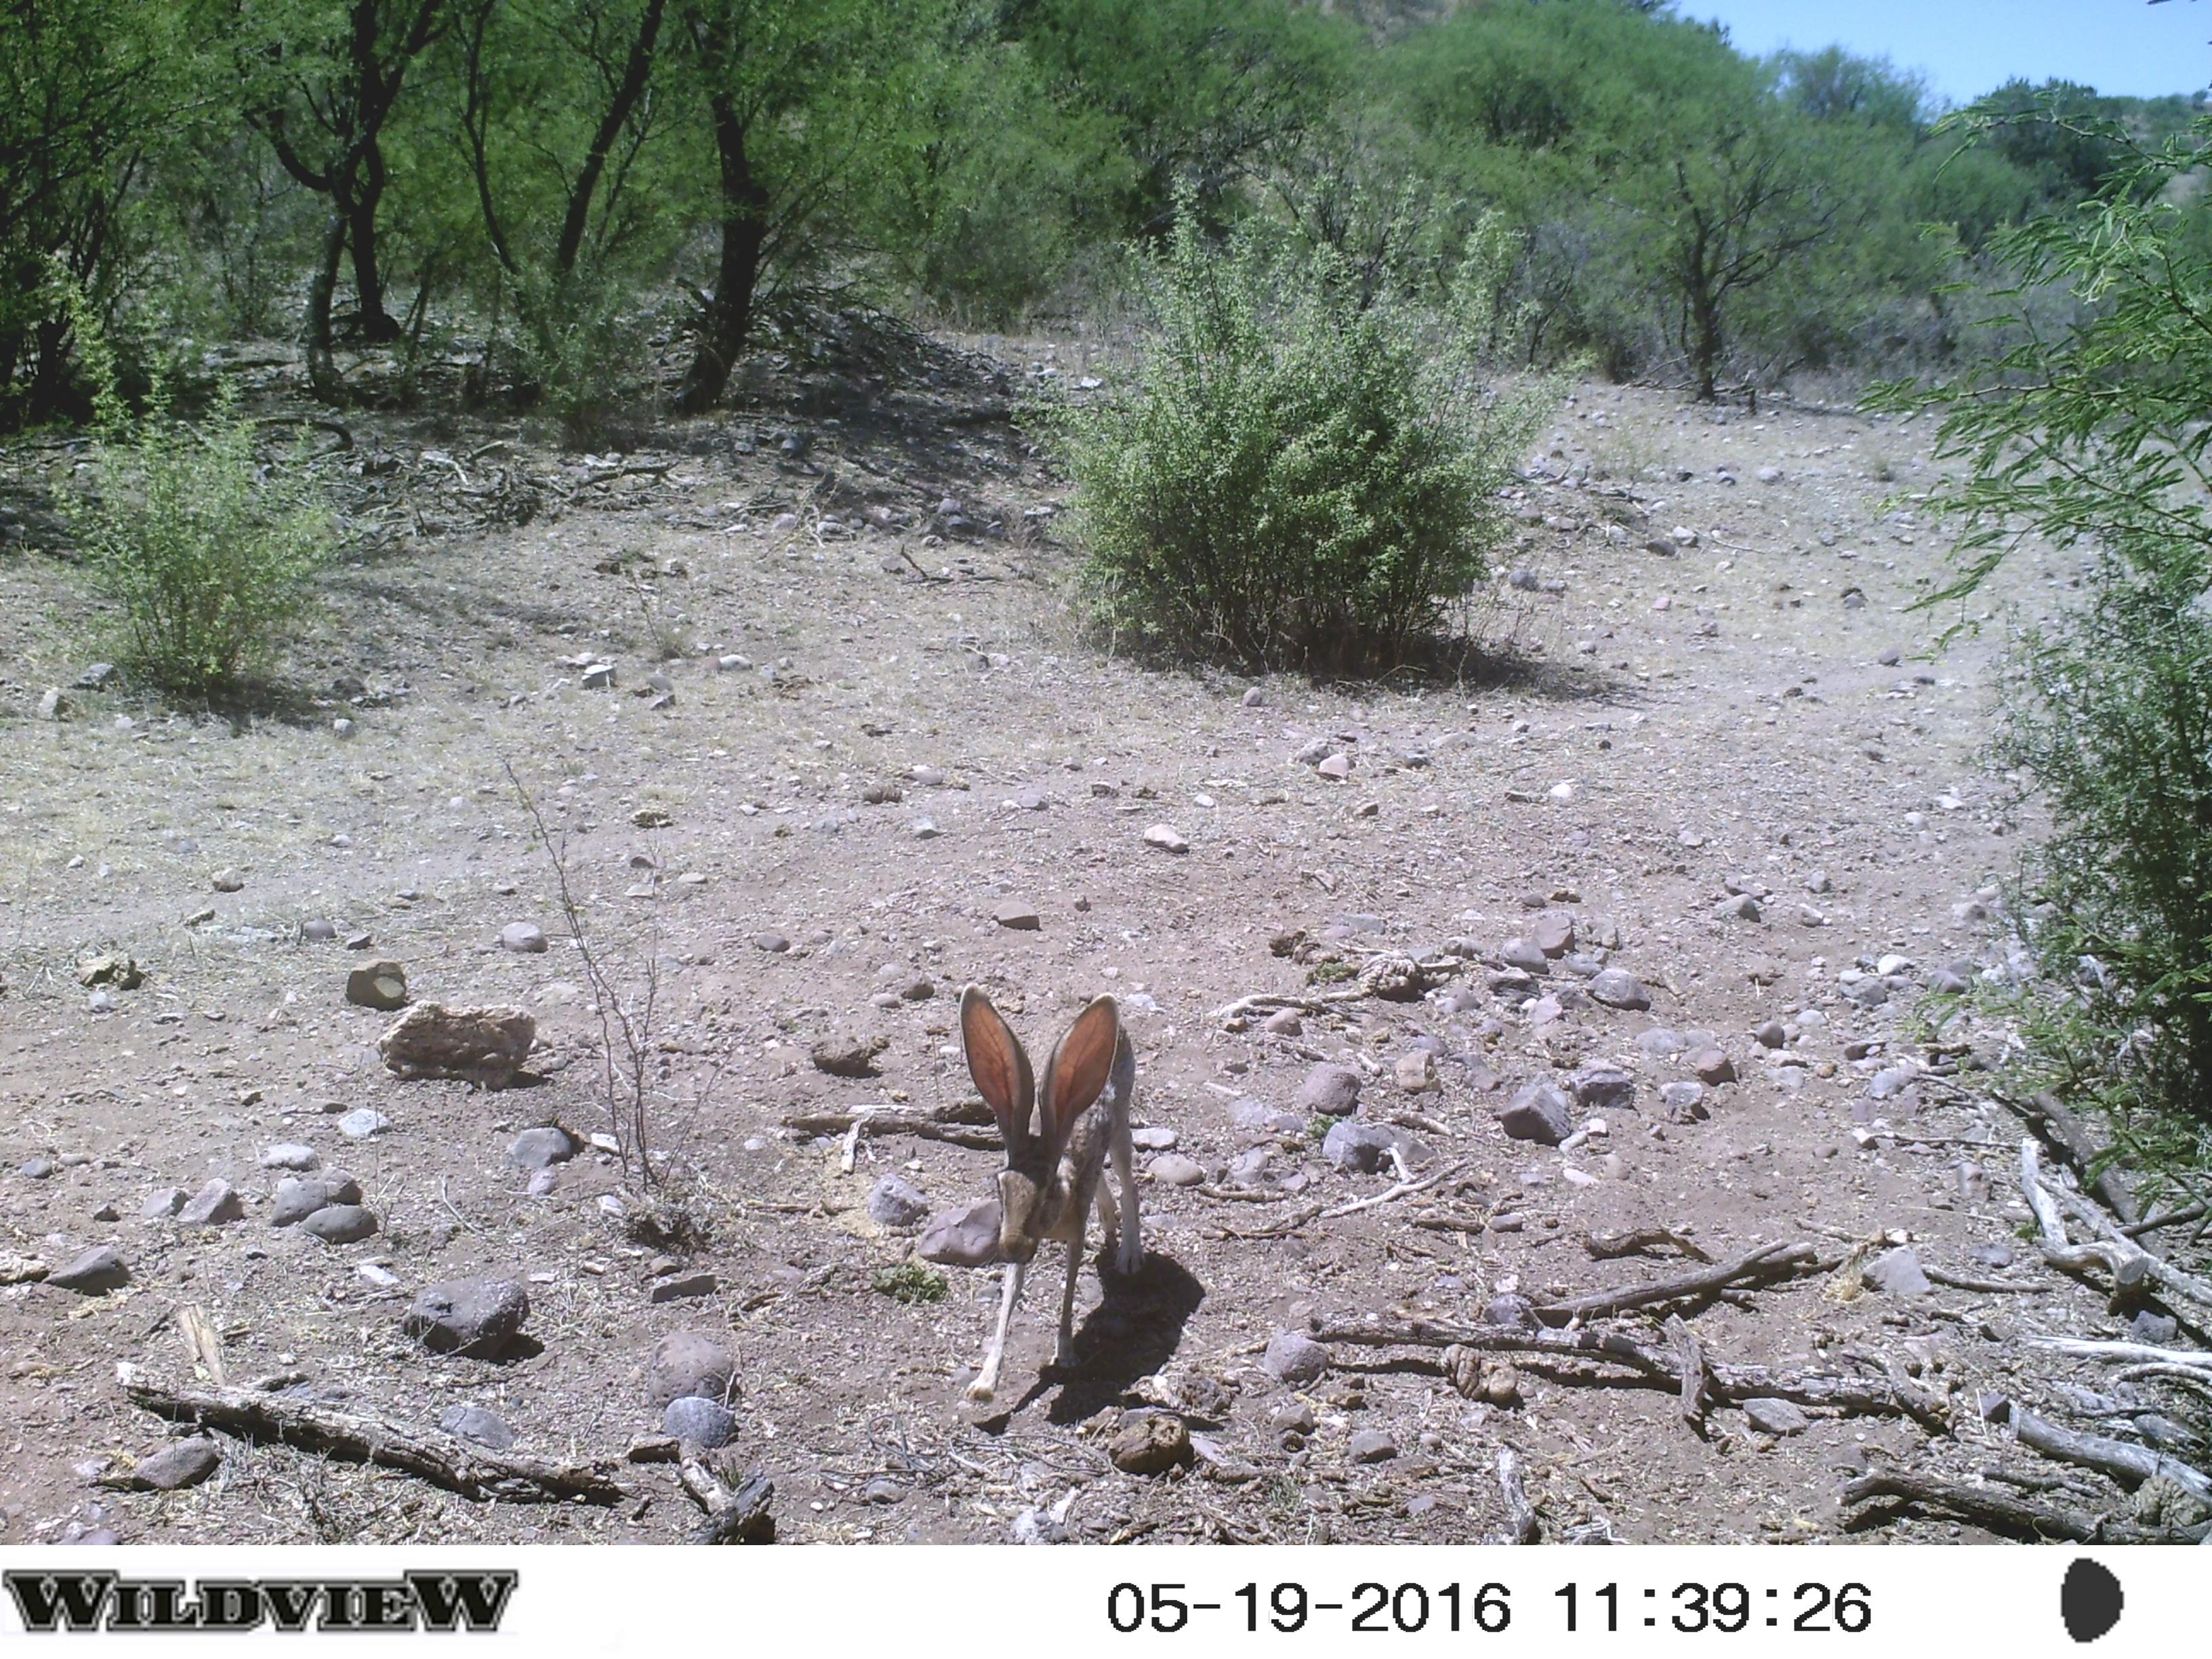 Antelope Jackrabbit, trail into Lagunita Patos - July 2016